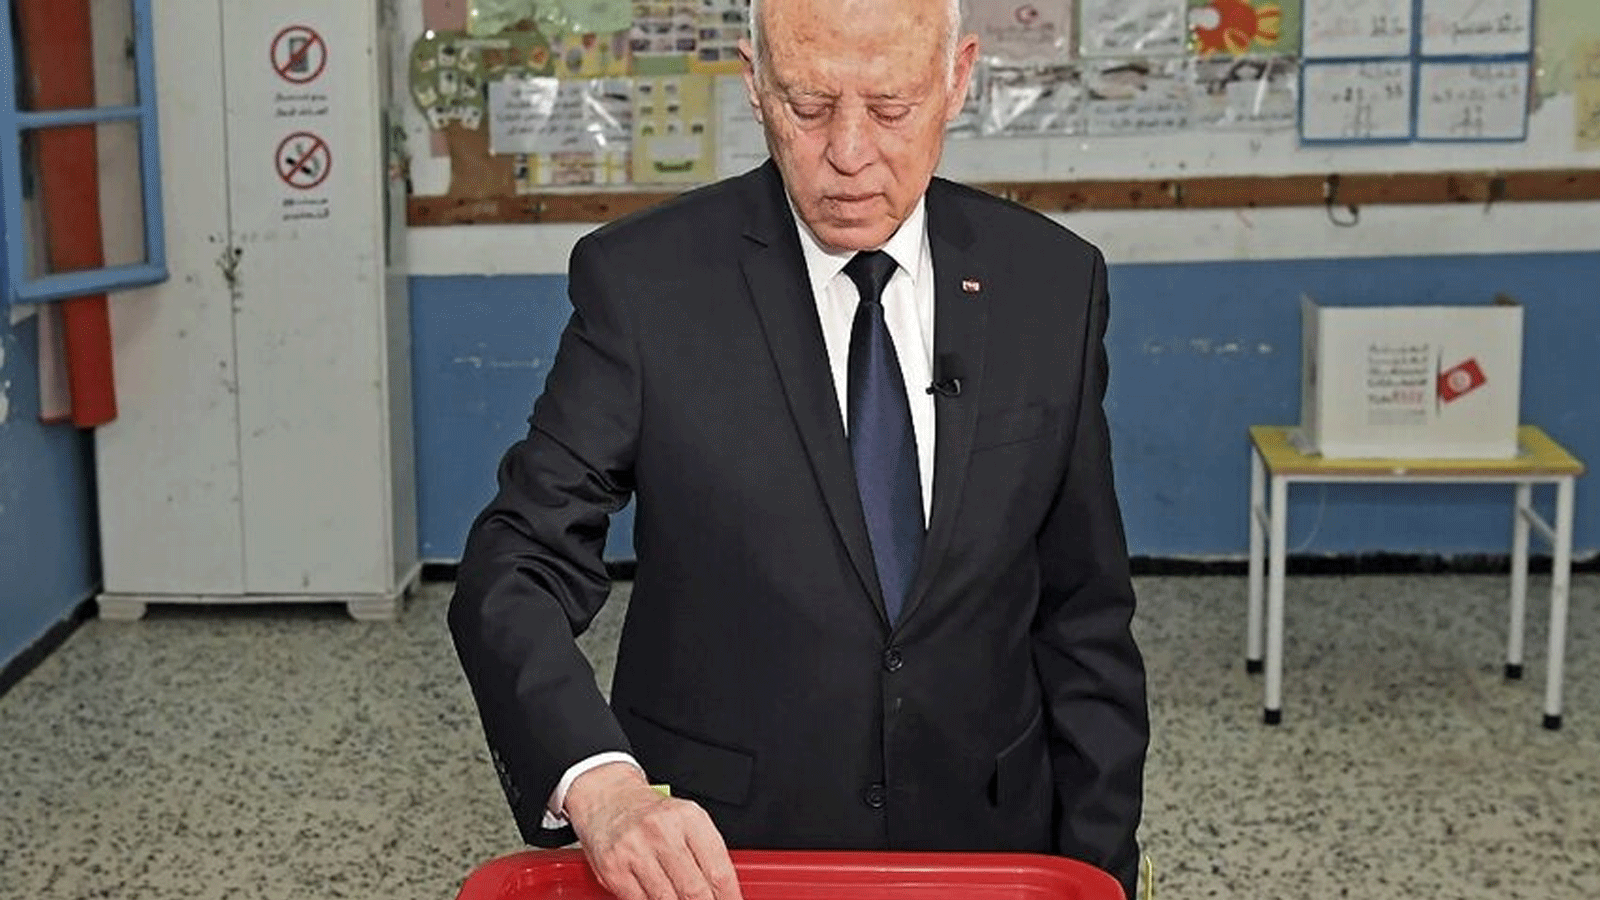 الرئيس قيس سعيد يصوت في استفتاء على مشروع الدستور الذي طرحه في مركز اقتراع بالعاصمة تونس 